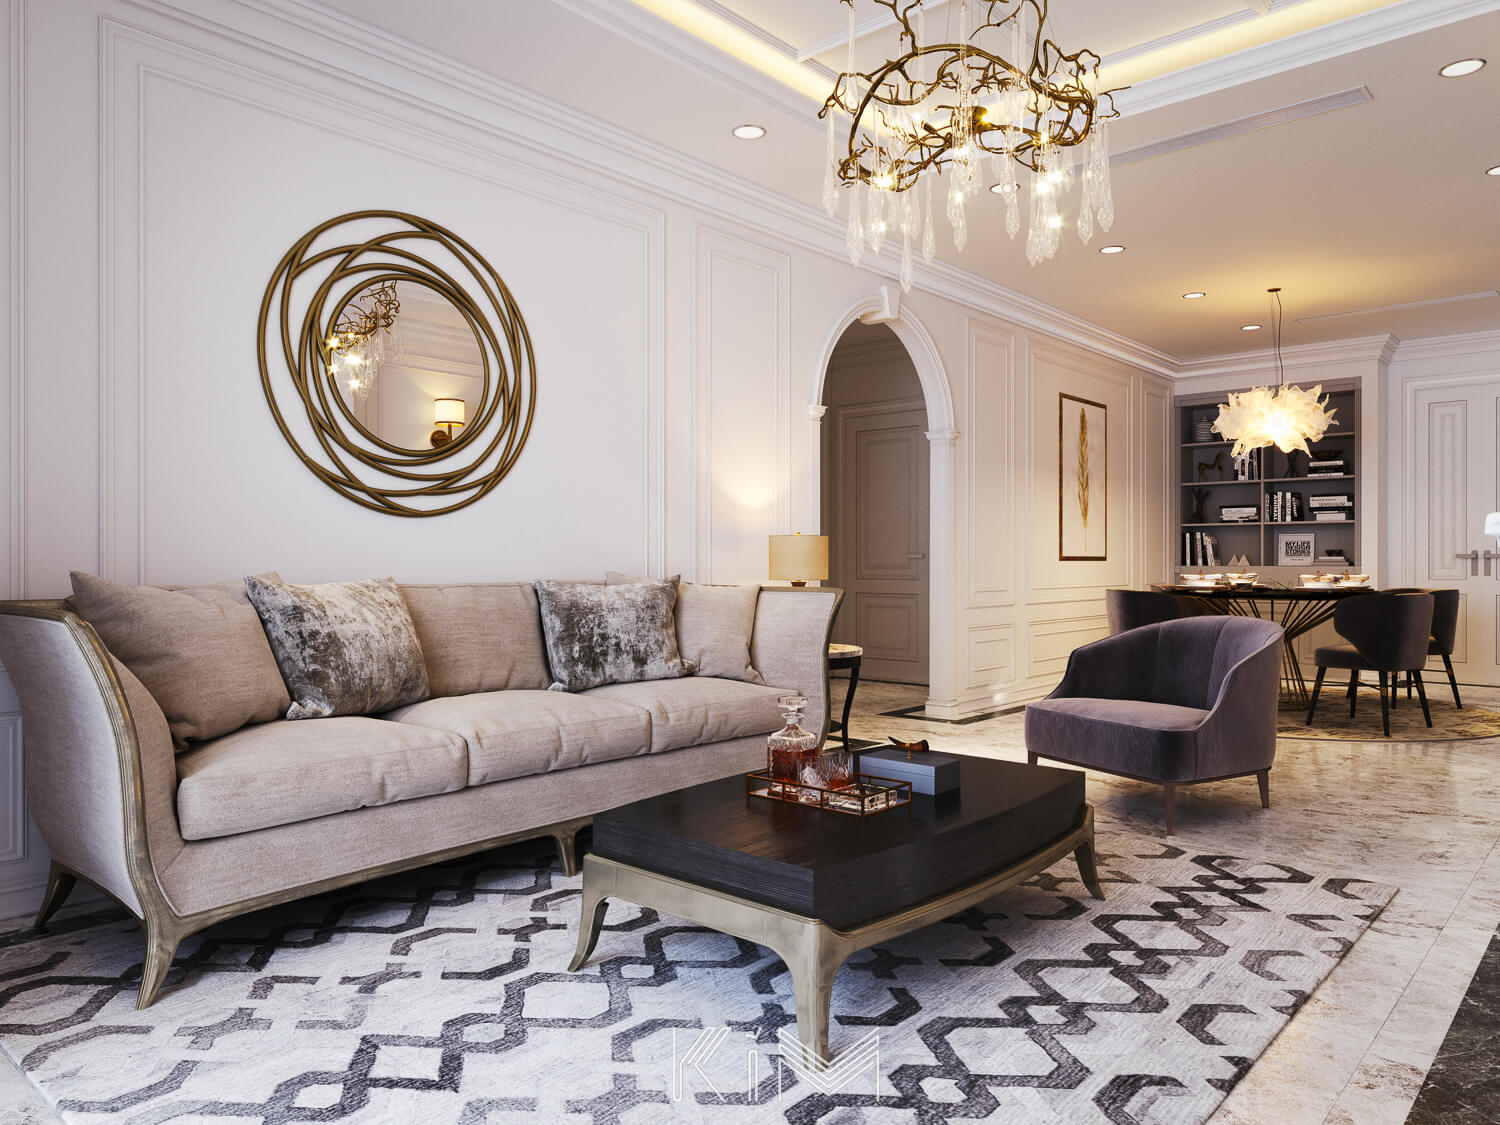 Sơn phòng khách màu trắng giúp đa dạng phong cách thiết kế